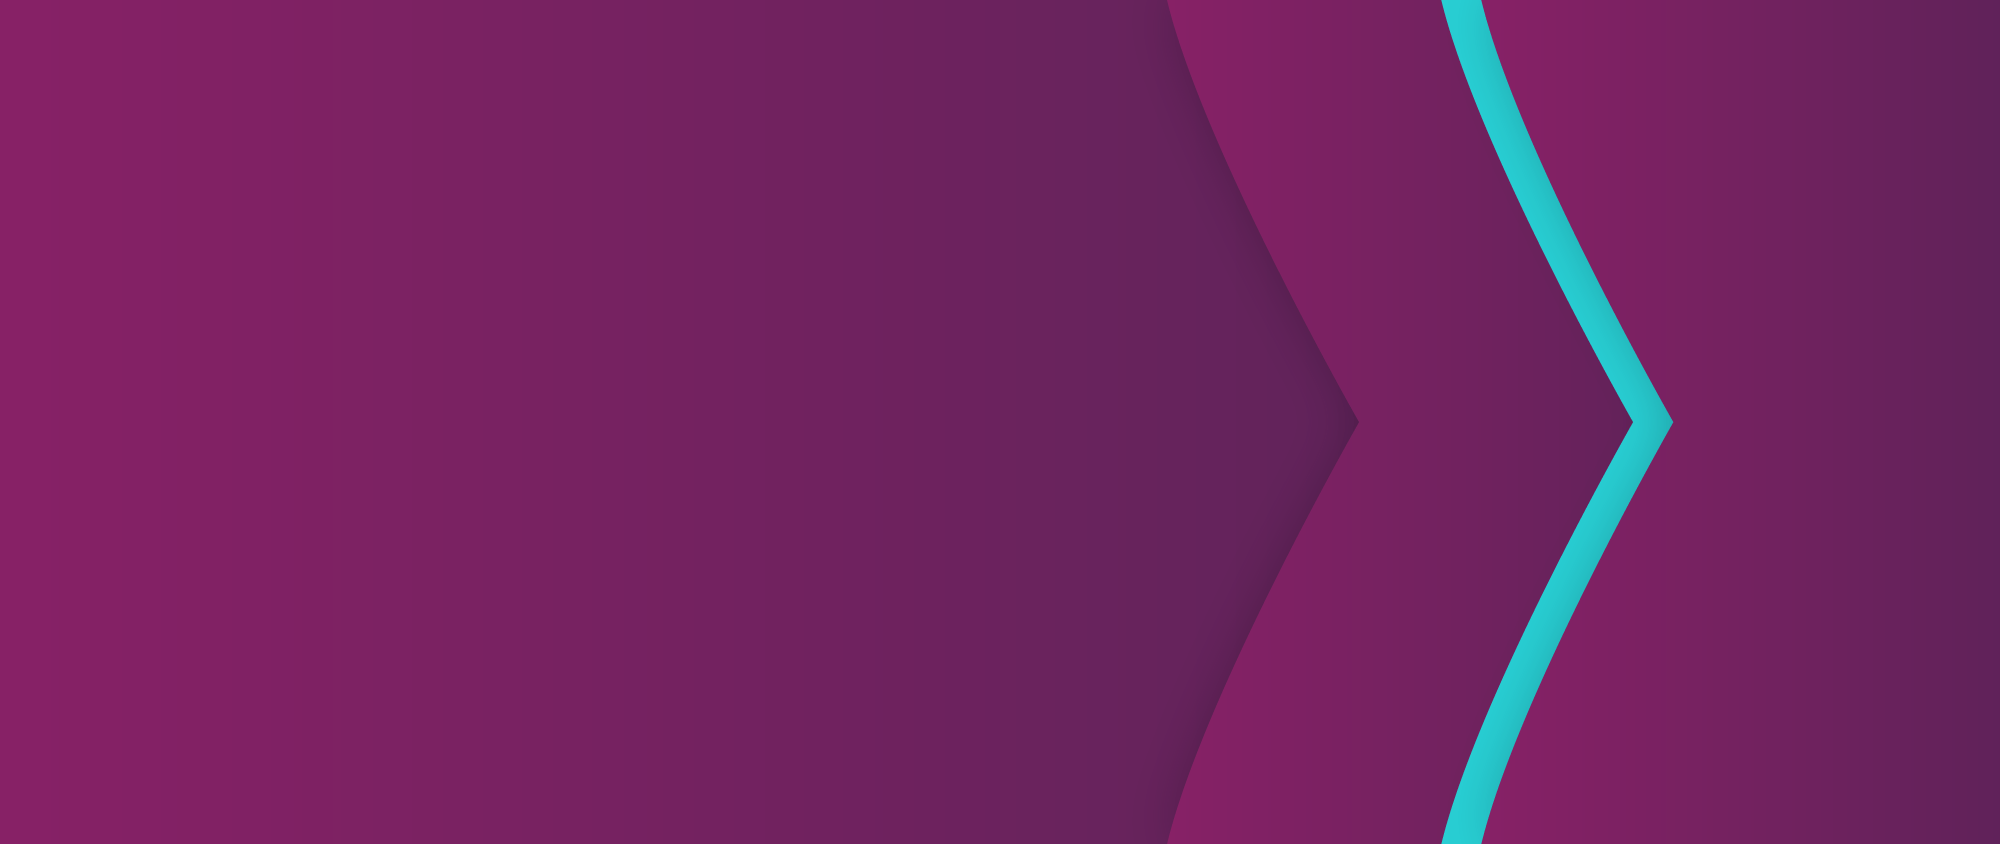 Фирменный пурпурный фон Skrill с бирюзовой стрелкой